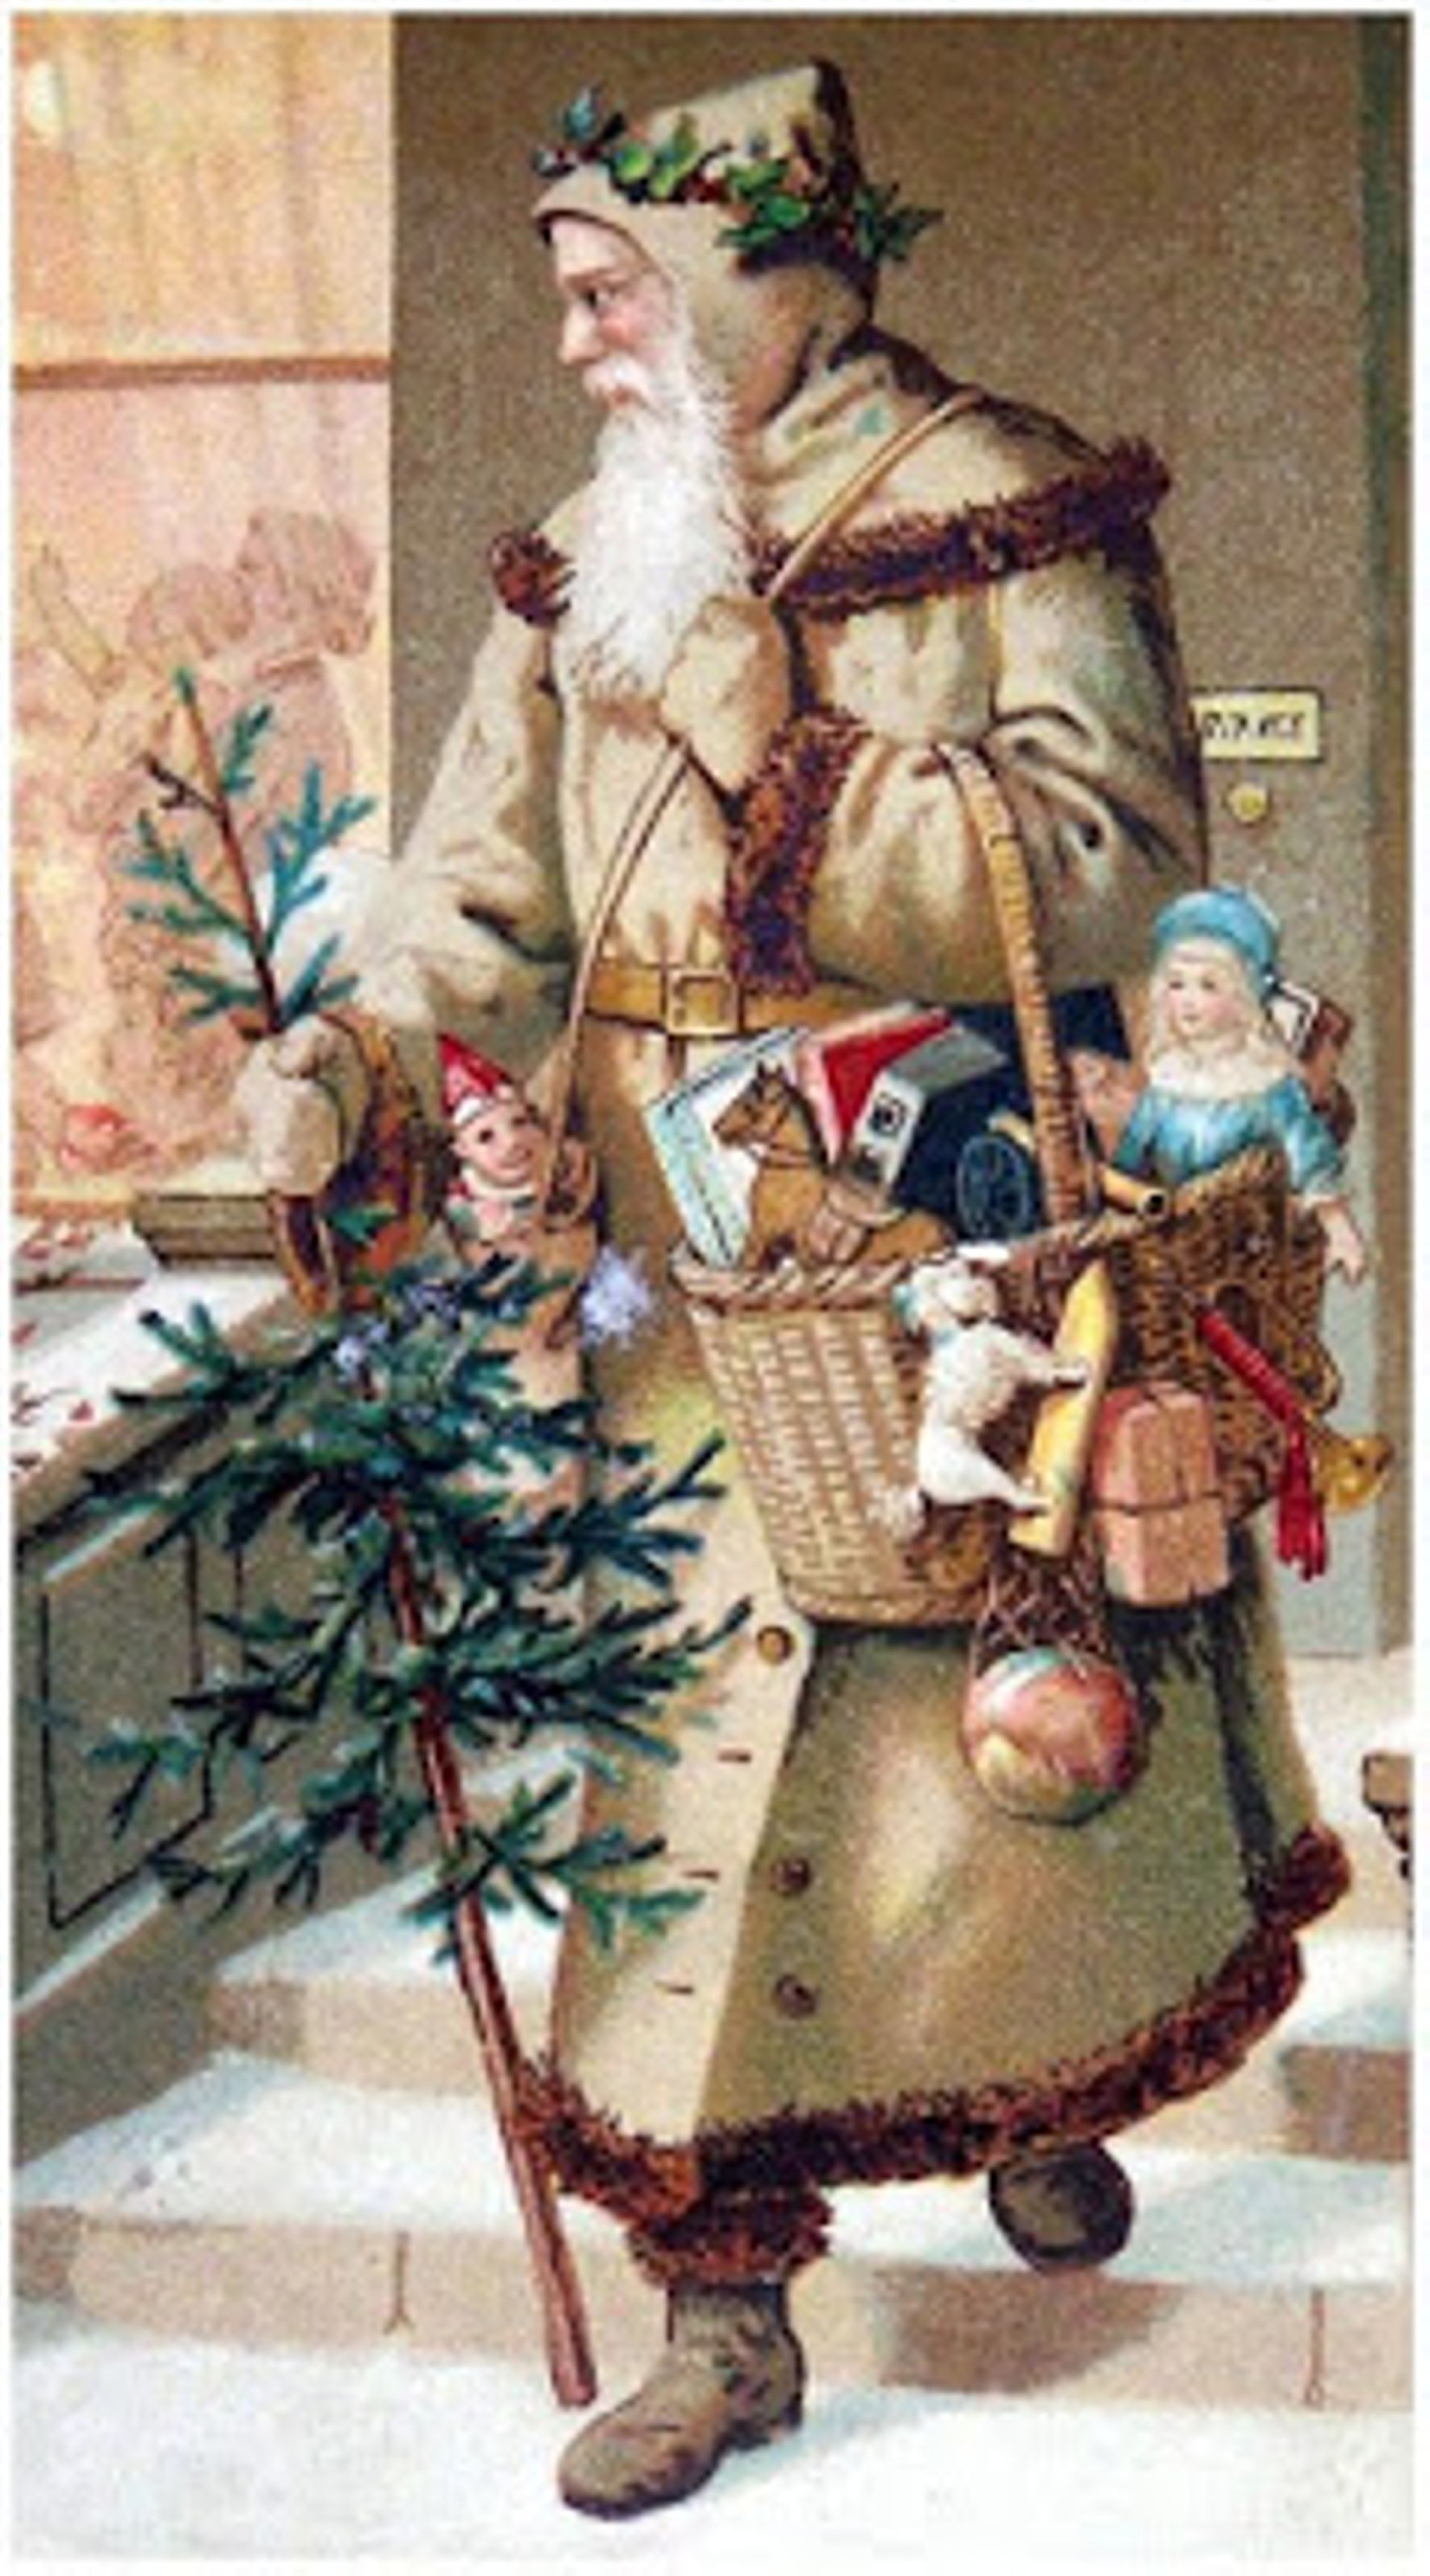 Jésus est-il né le 25 décembre? Coca-Cola a-t-il fait rougir le père Noël? Le sapin est-il chrétien? Démêlez le vrai du faux